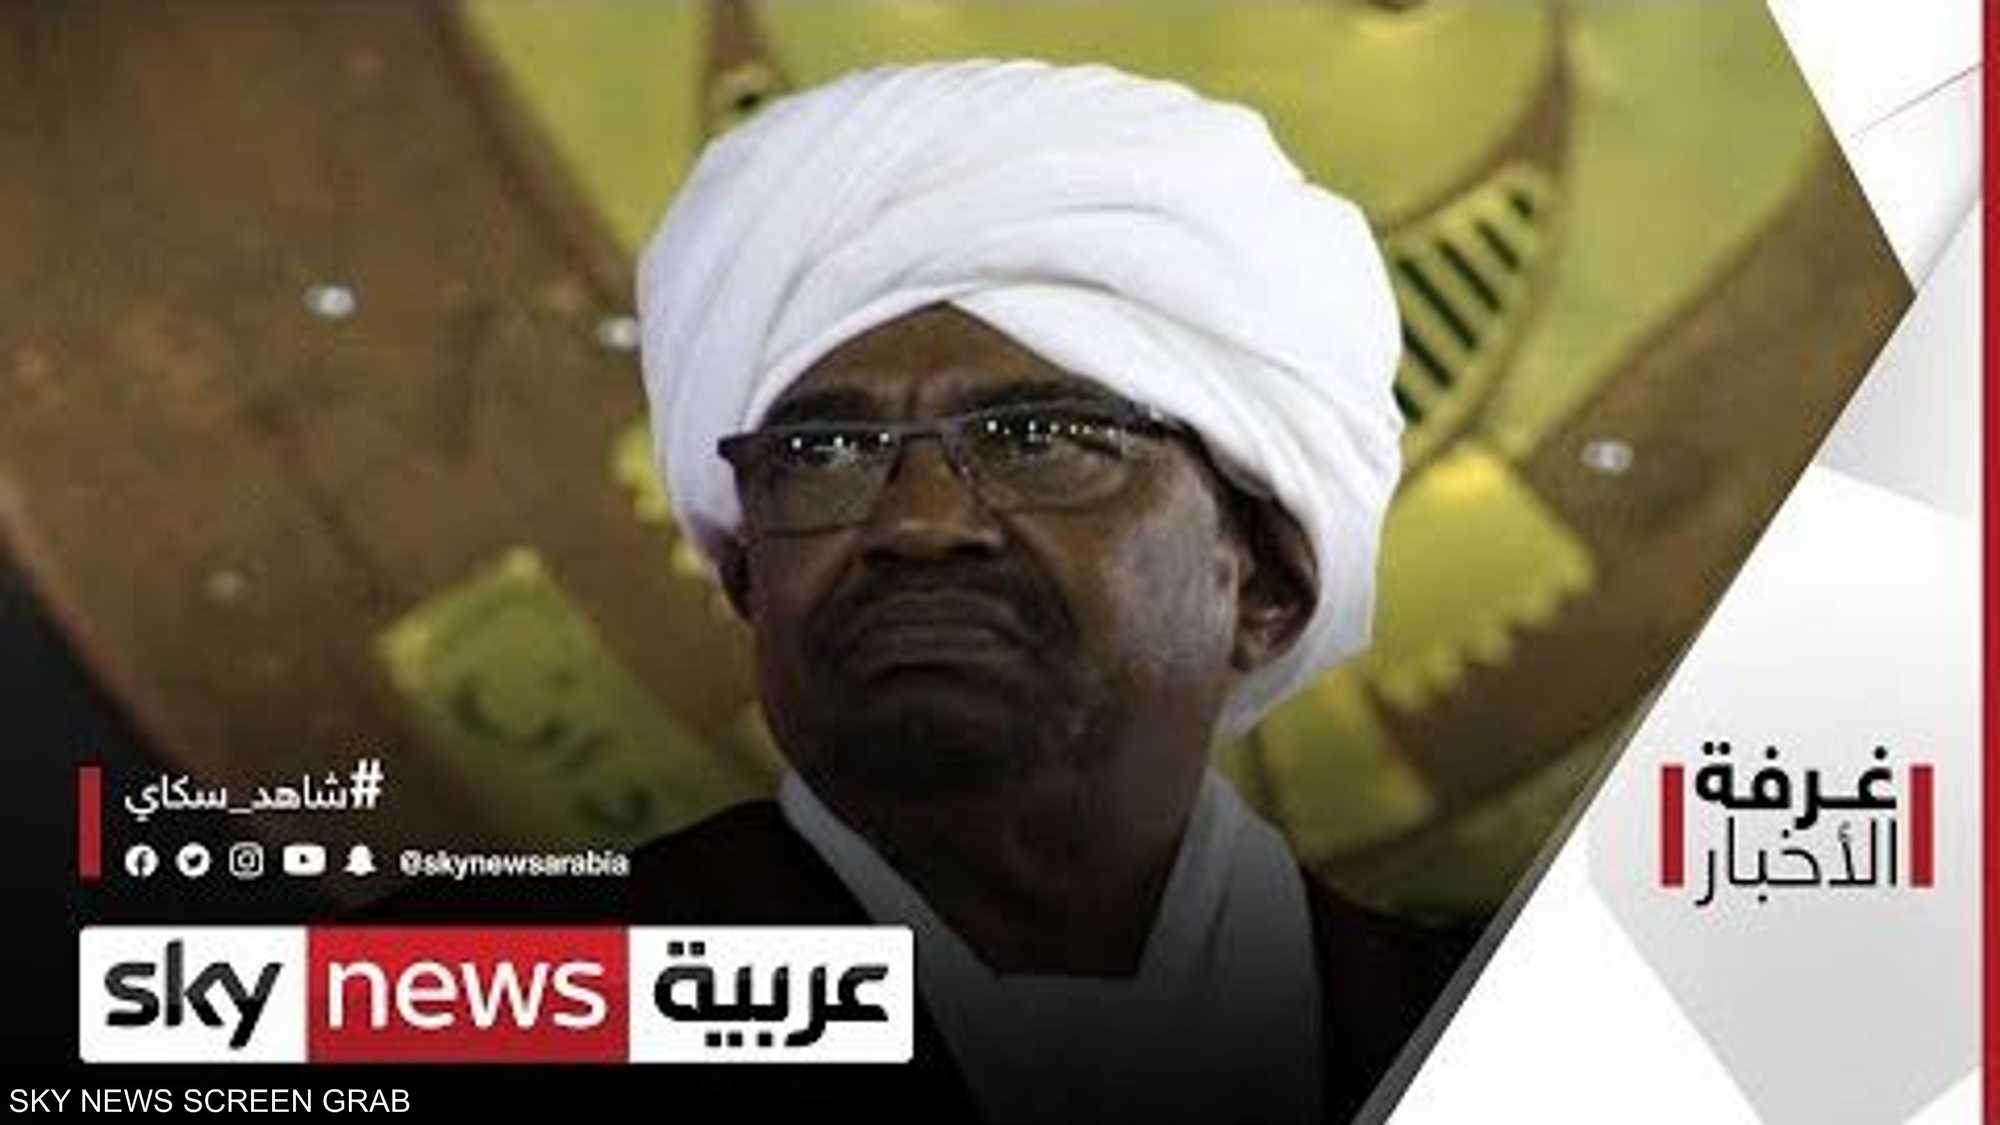 المحكمة الجنائية تبحث في السودان تسليمها البشير